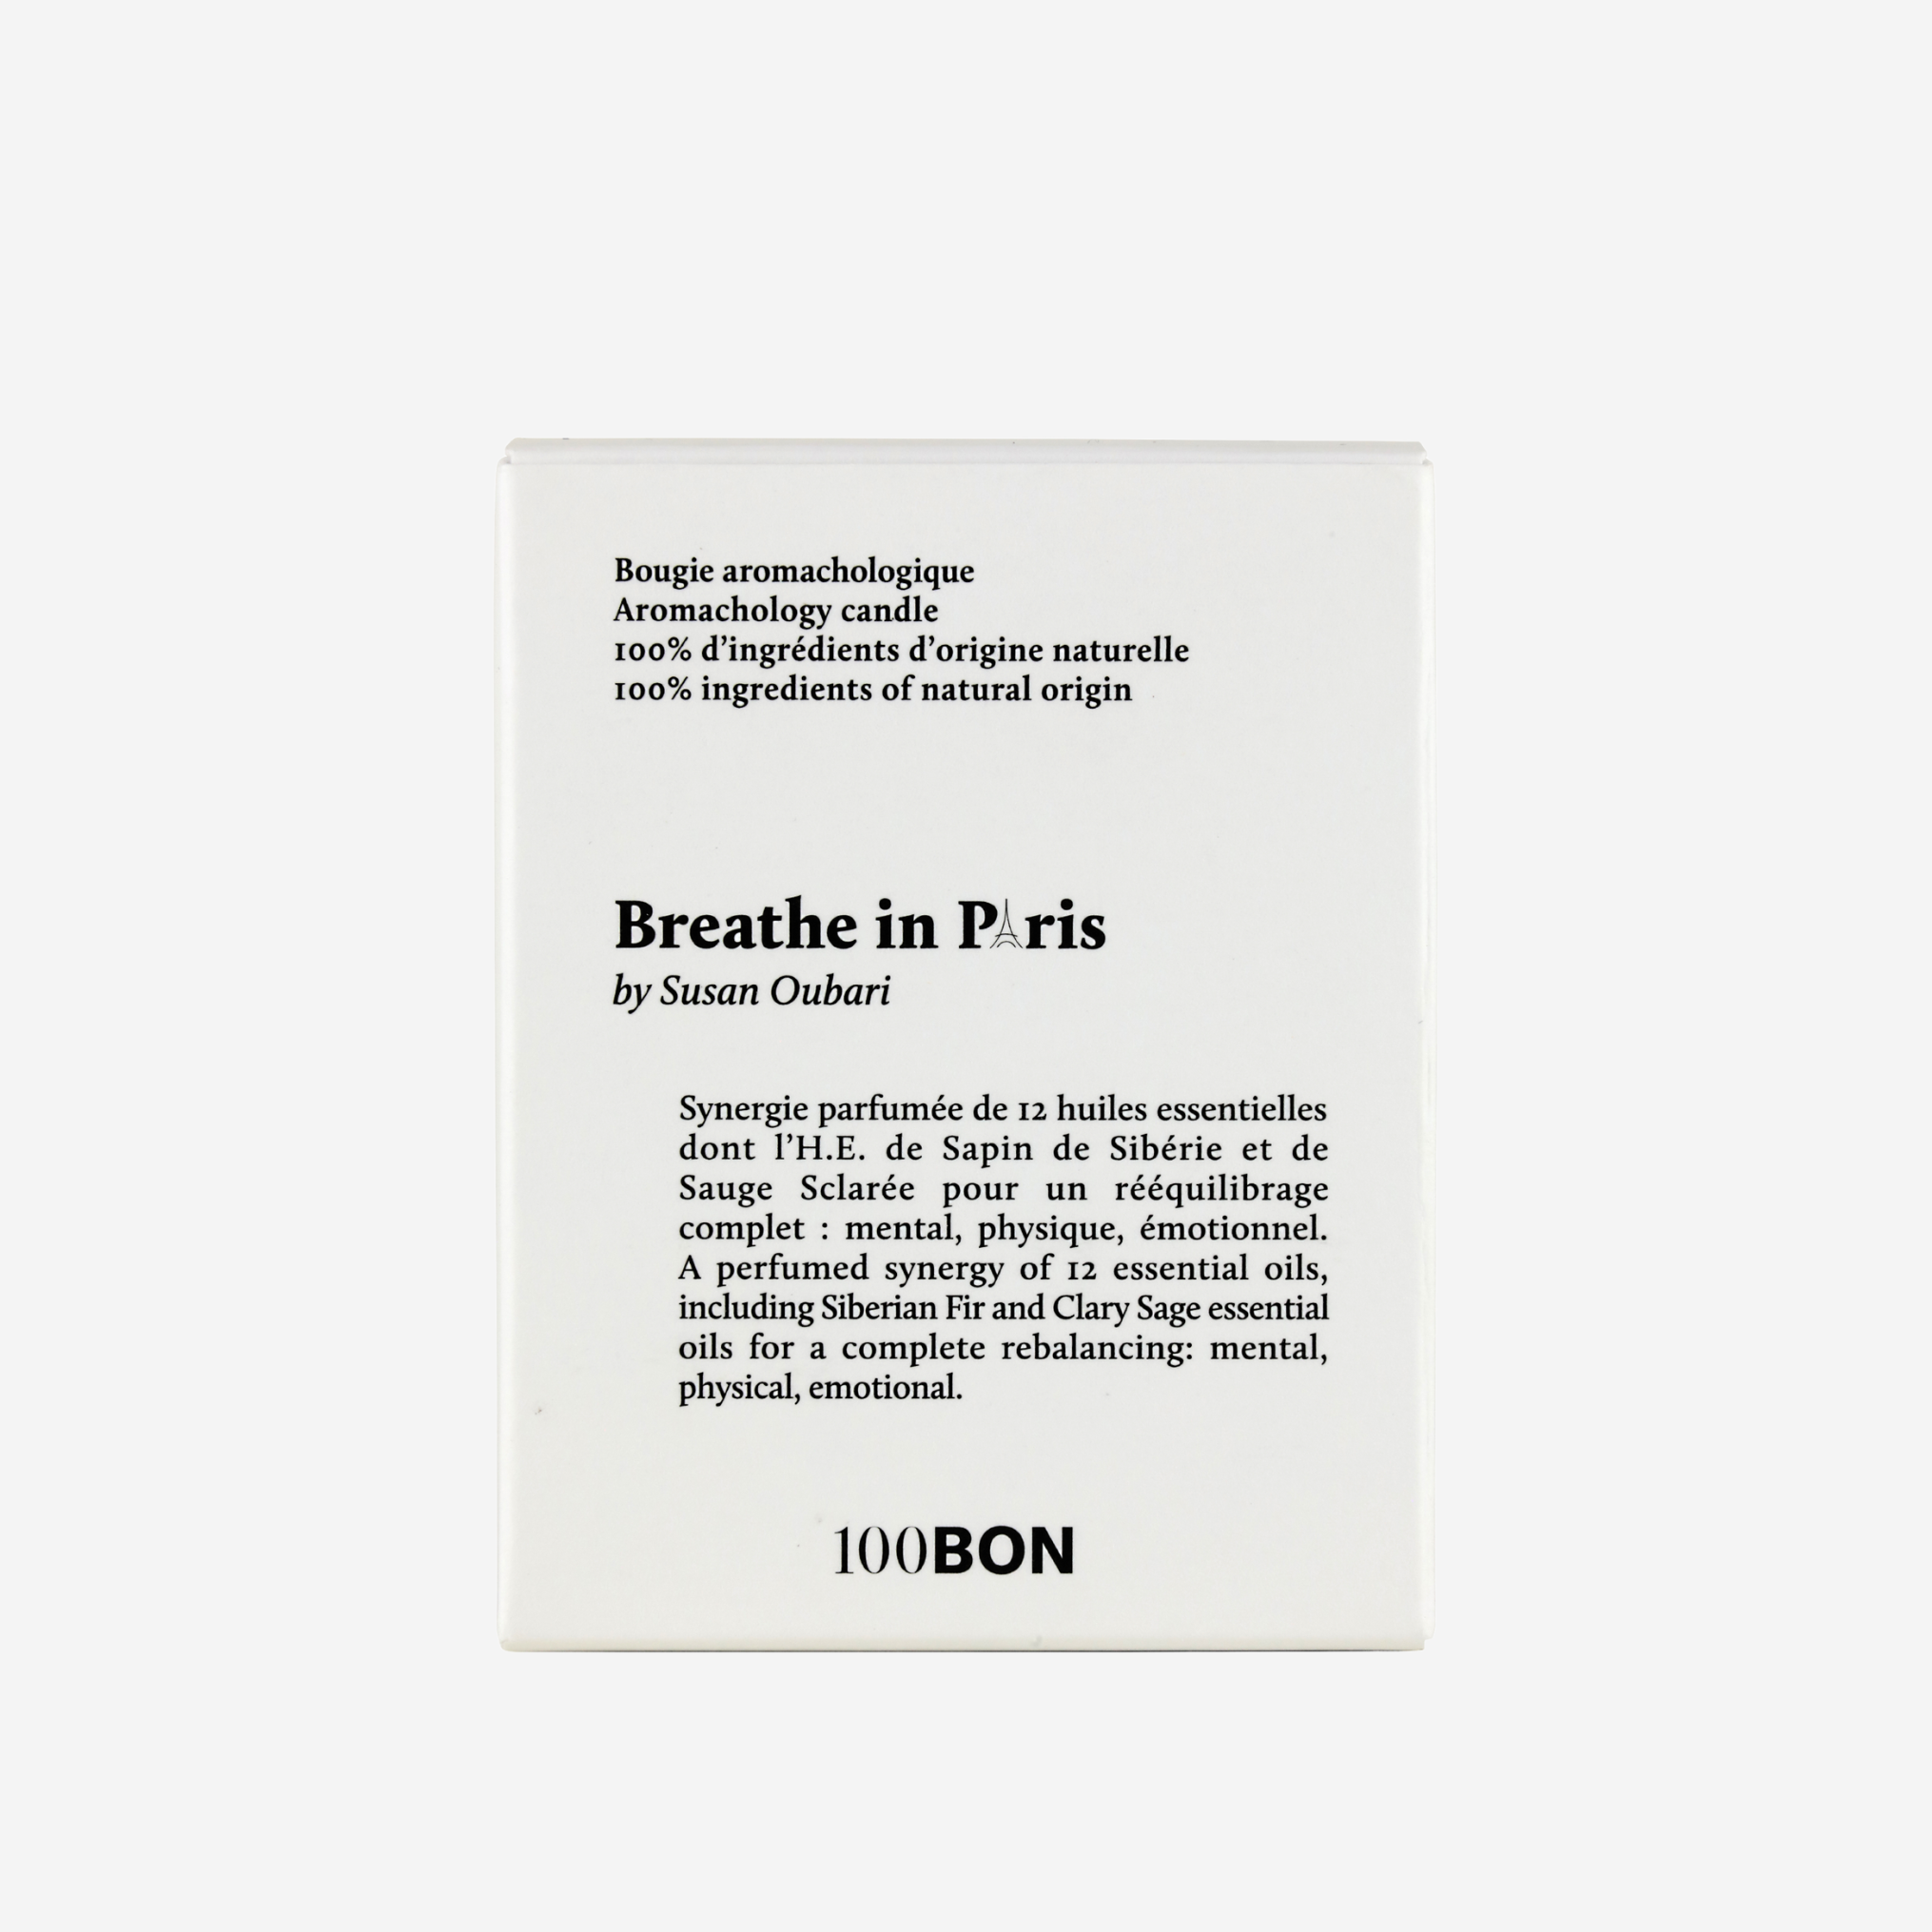 Breathe in Paris - Bougie parfumée